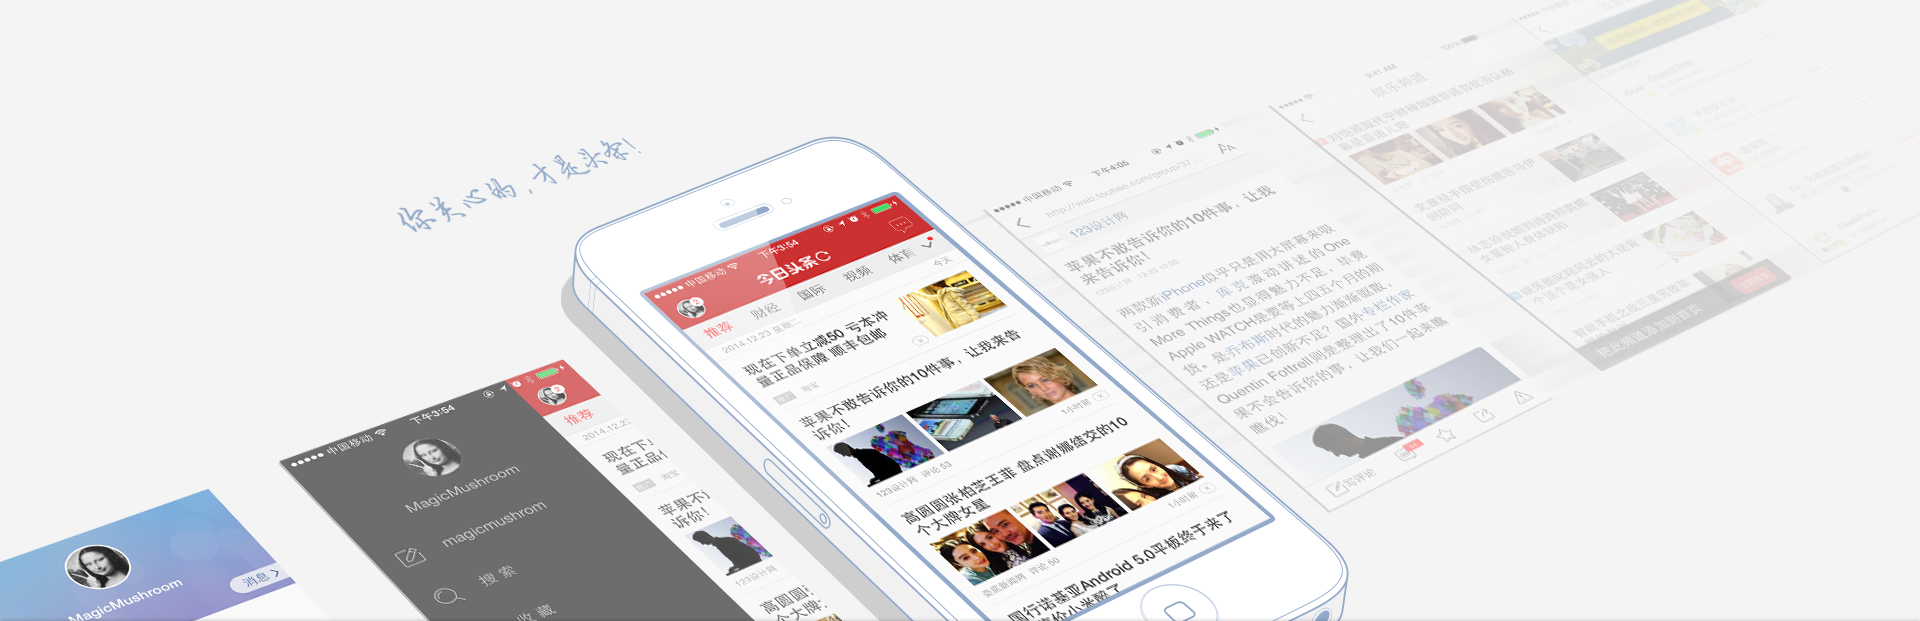 News aggregator Jinri Toutiao tweaks its interface to prioritize mini programs